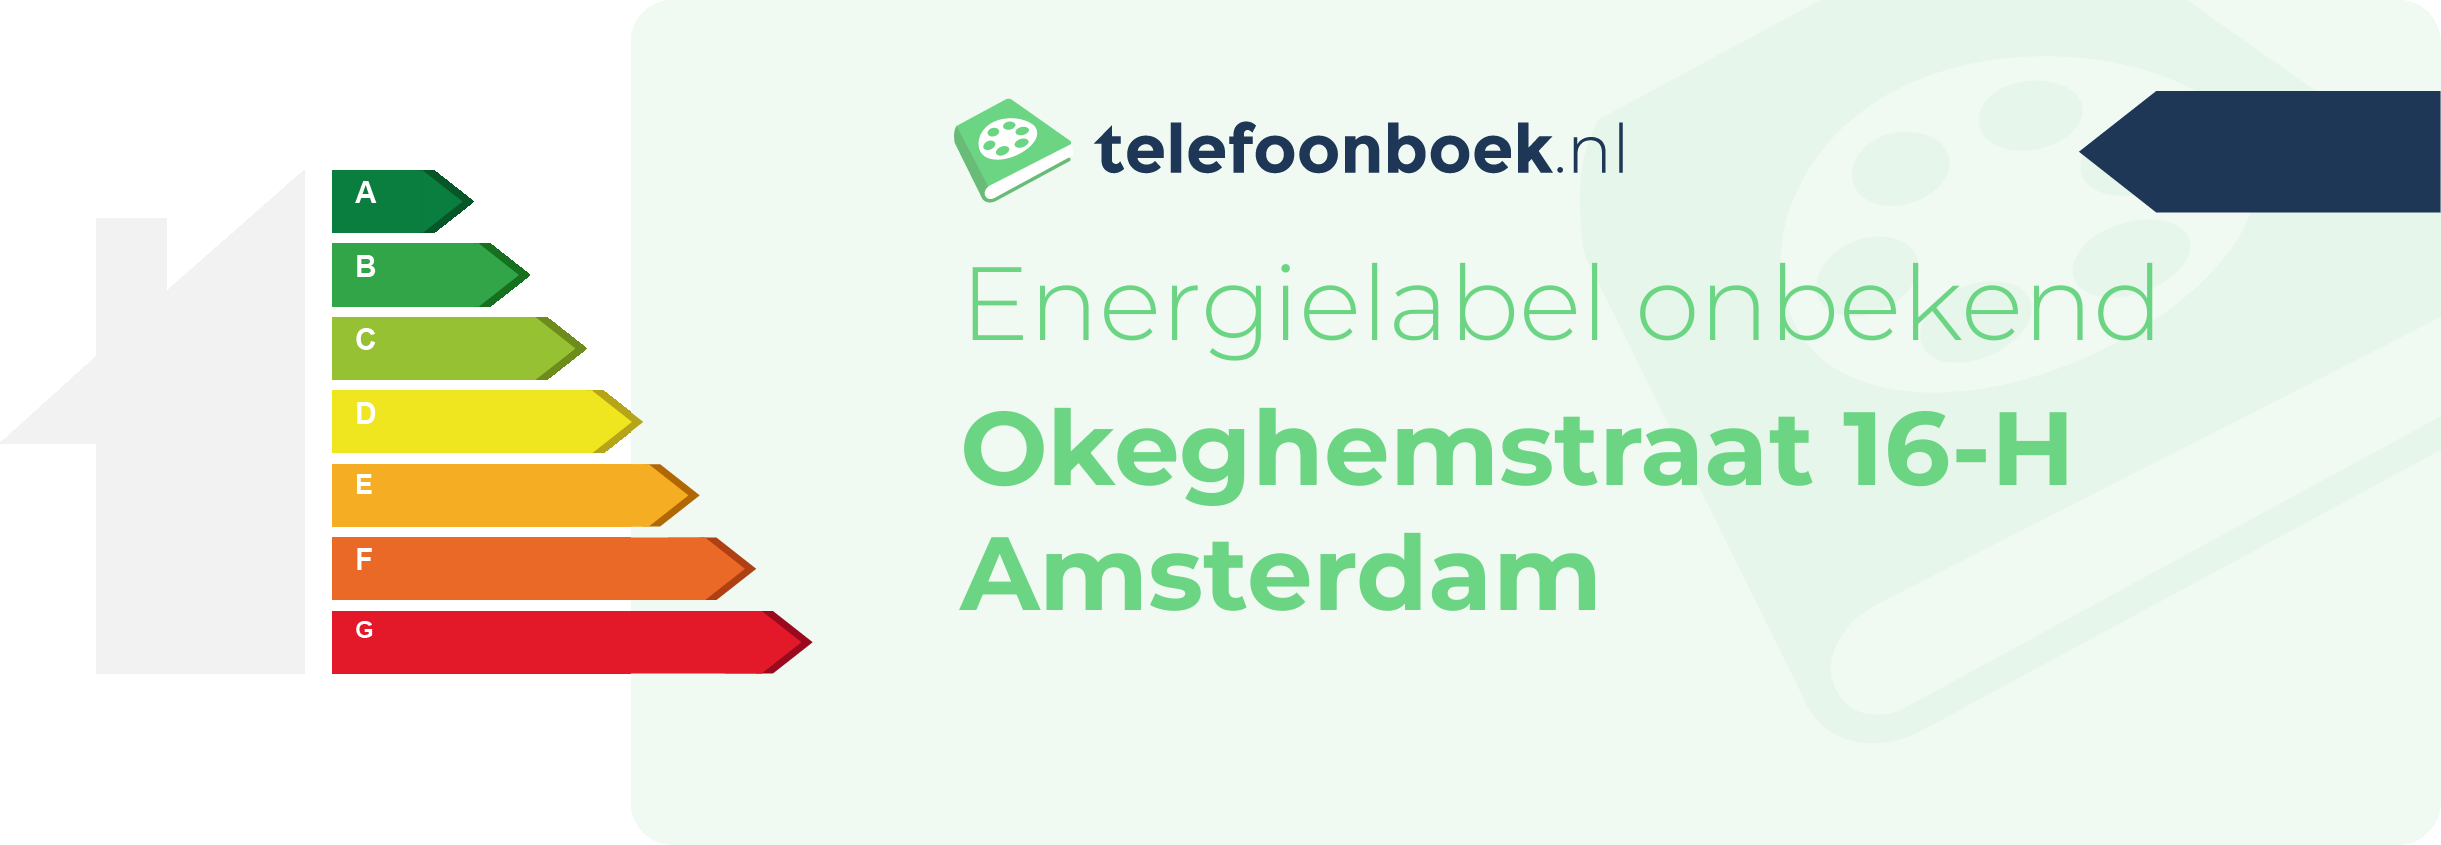 Energielabel Okeghemstraat 16-H Amsterdam